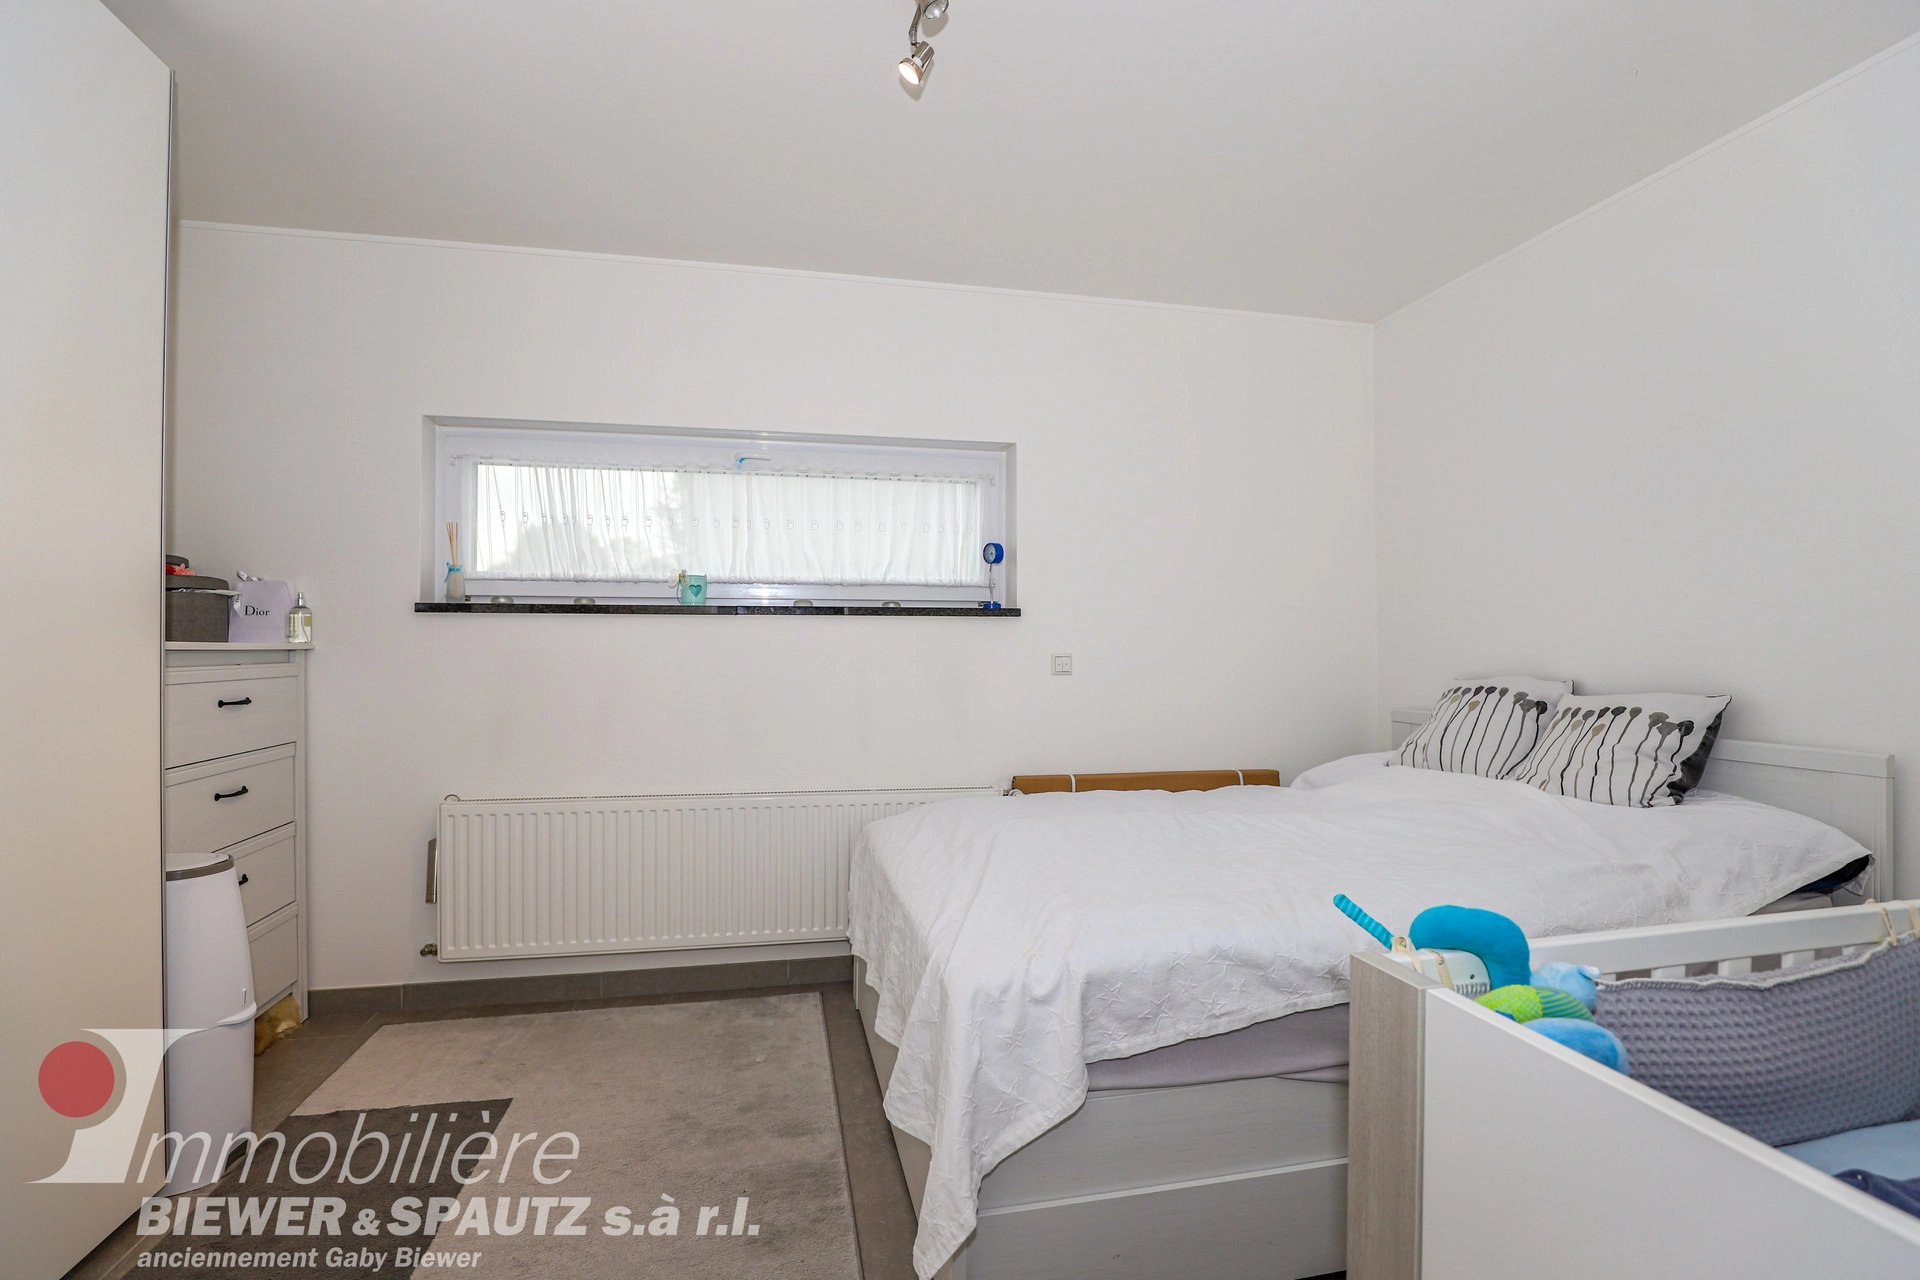 VERMIETET - Maisonnettewohnung mit 1 Schlafzimmer in Berbourg